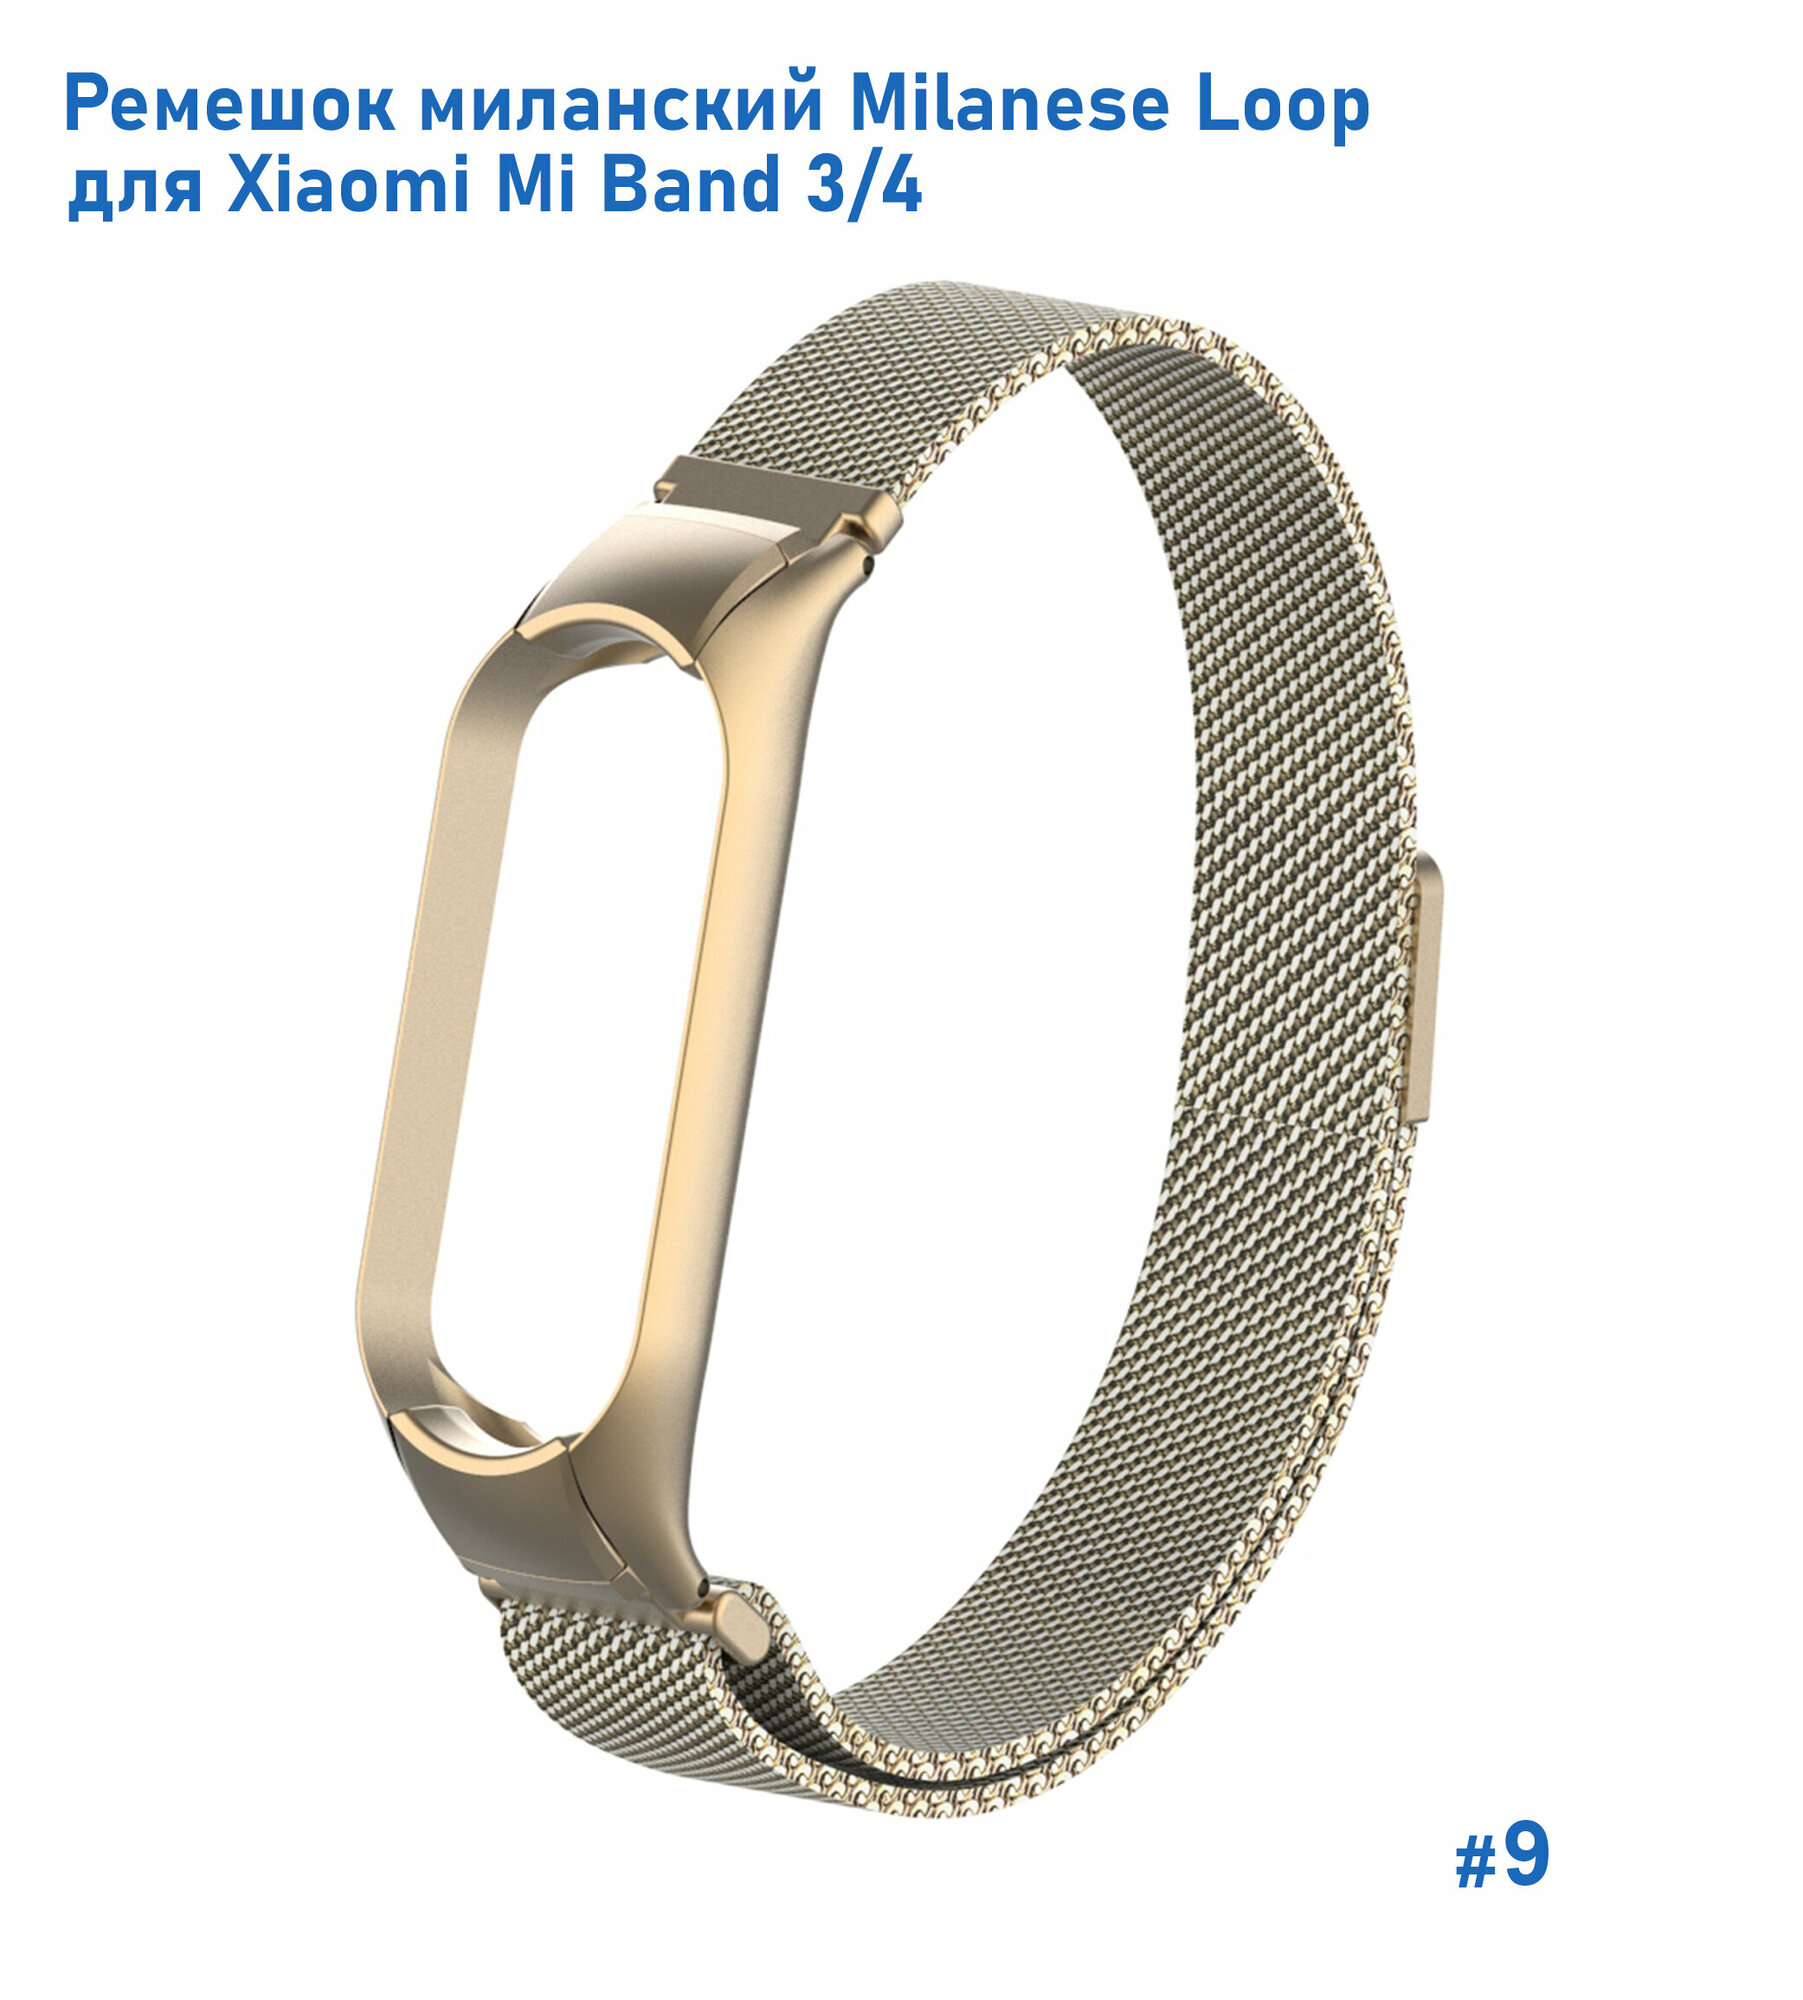 Ремешок миланcкий из нержавеющей стали Milanese Loop для Xiaomi Mi Band 3/4, на магните, винтажное золото (9)